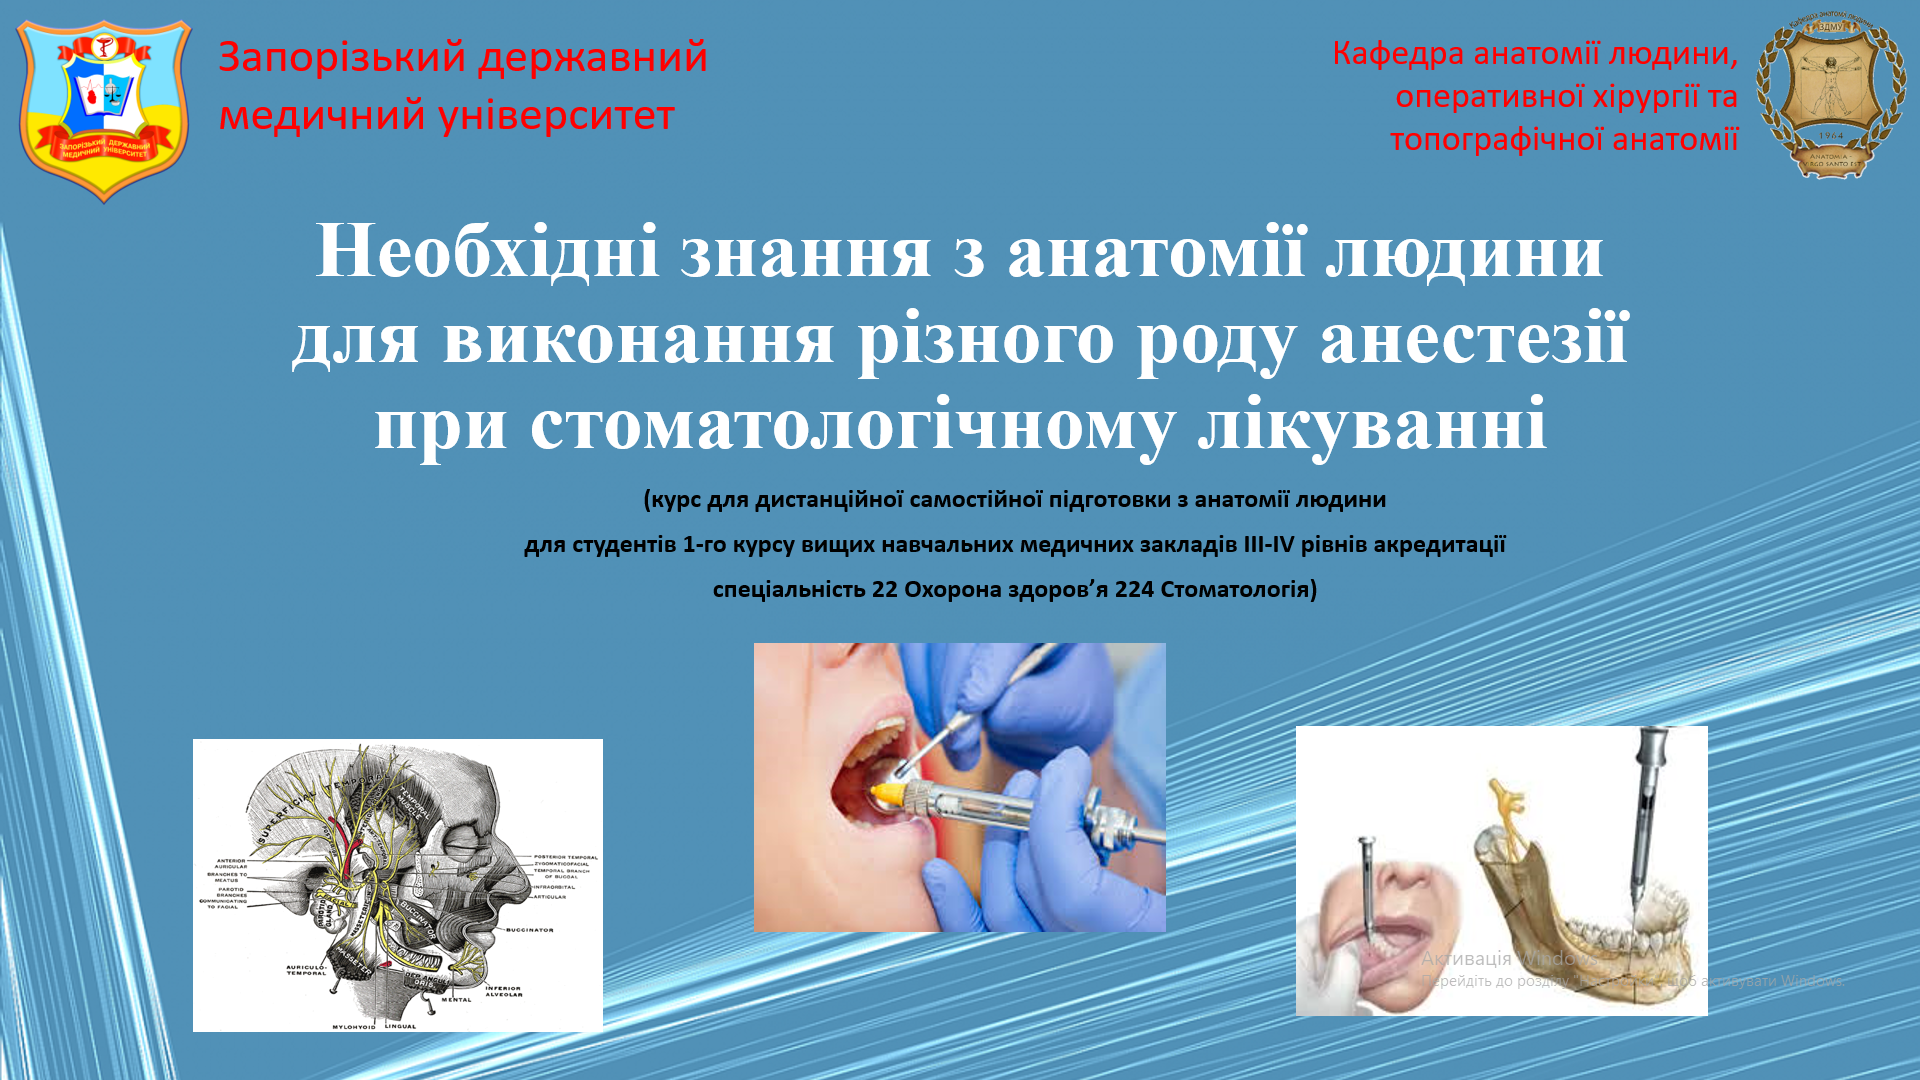 Необхідні знання з анатомії людини для виконання різного роду анестезії при стоматологічному лікуванні